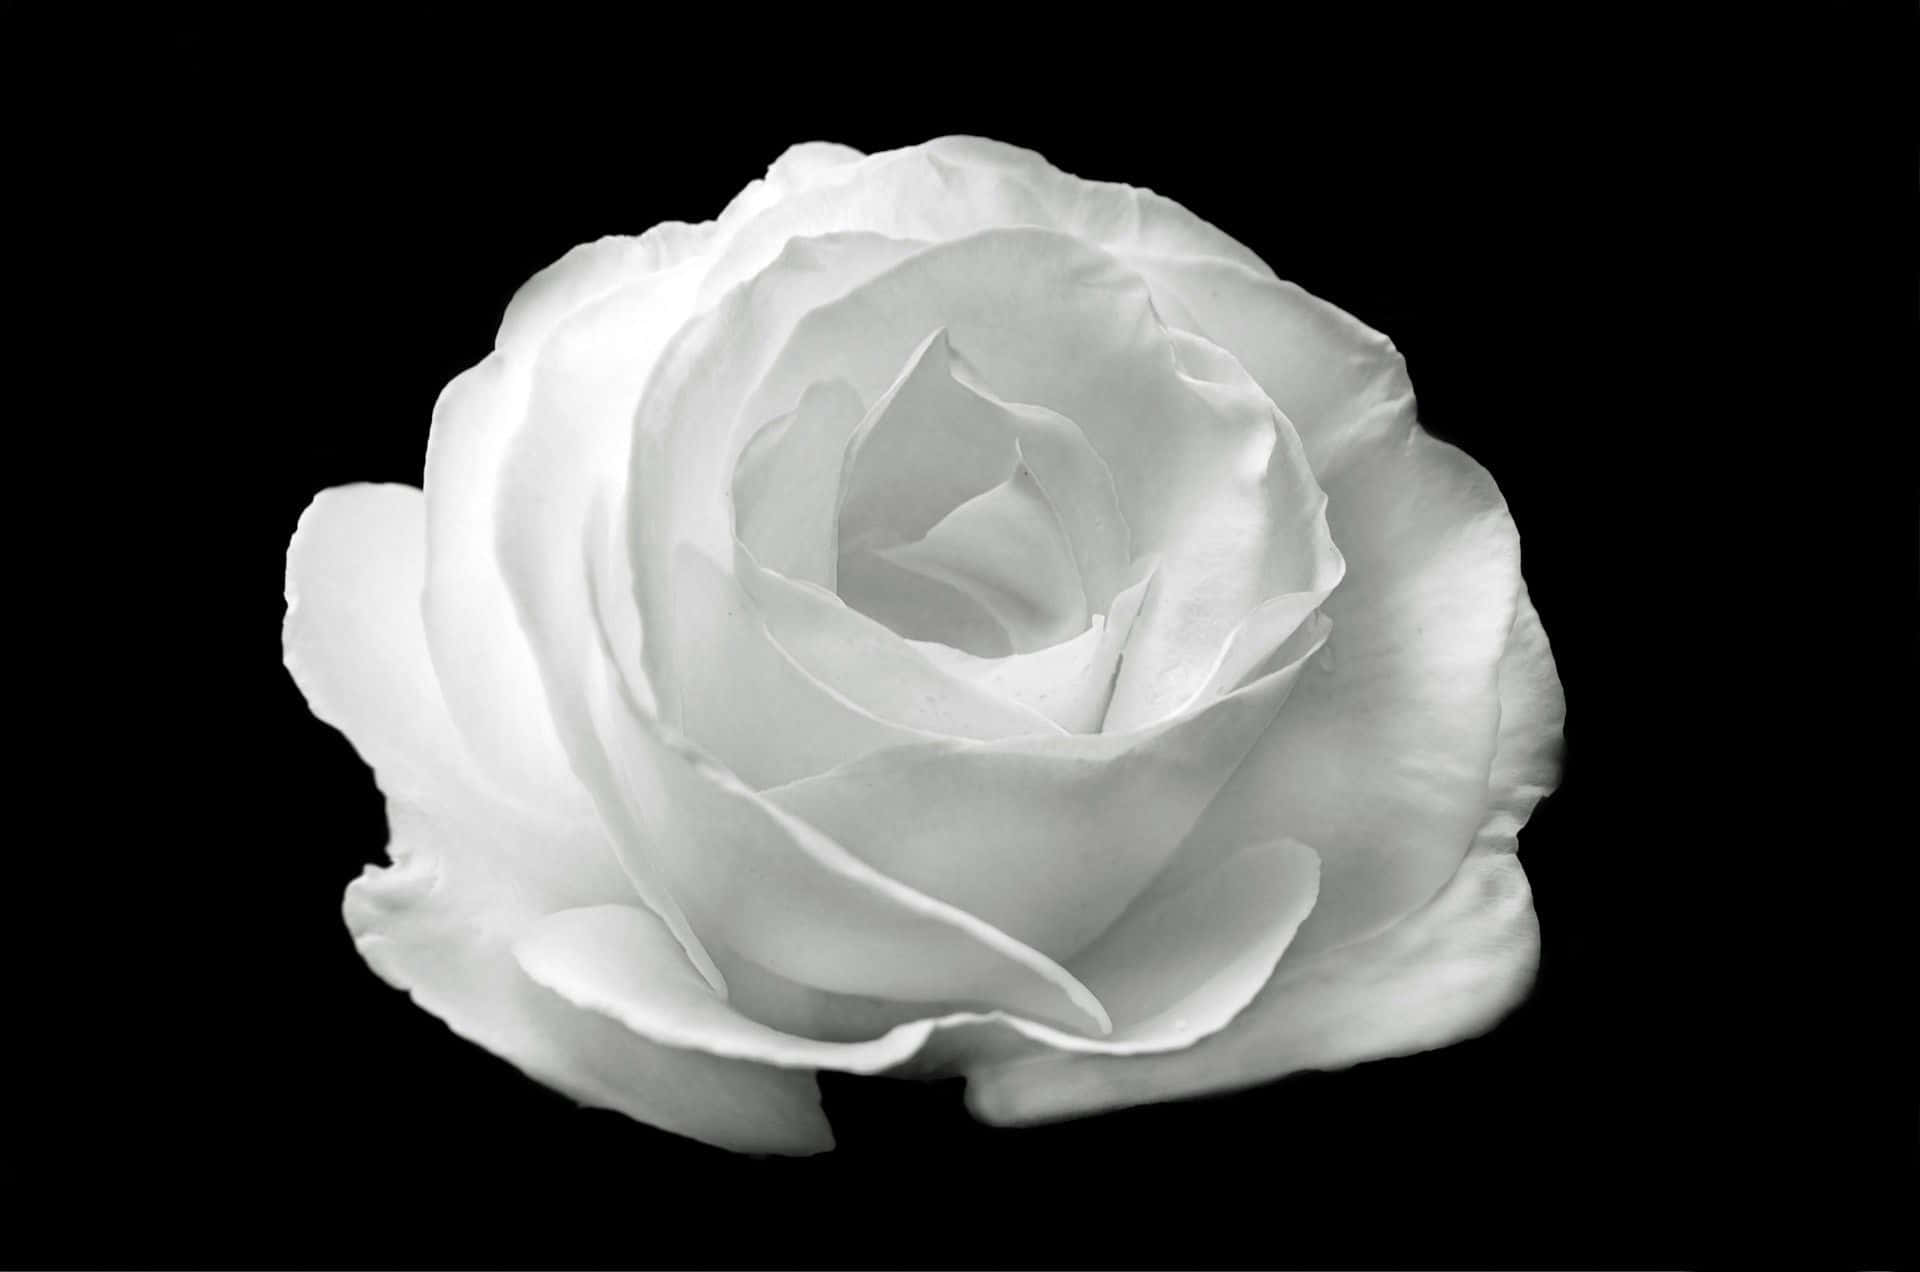 Black And White Aesthetic White Rose Flower Wallpaper